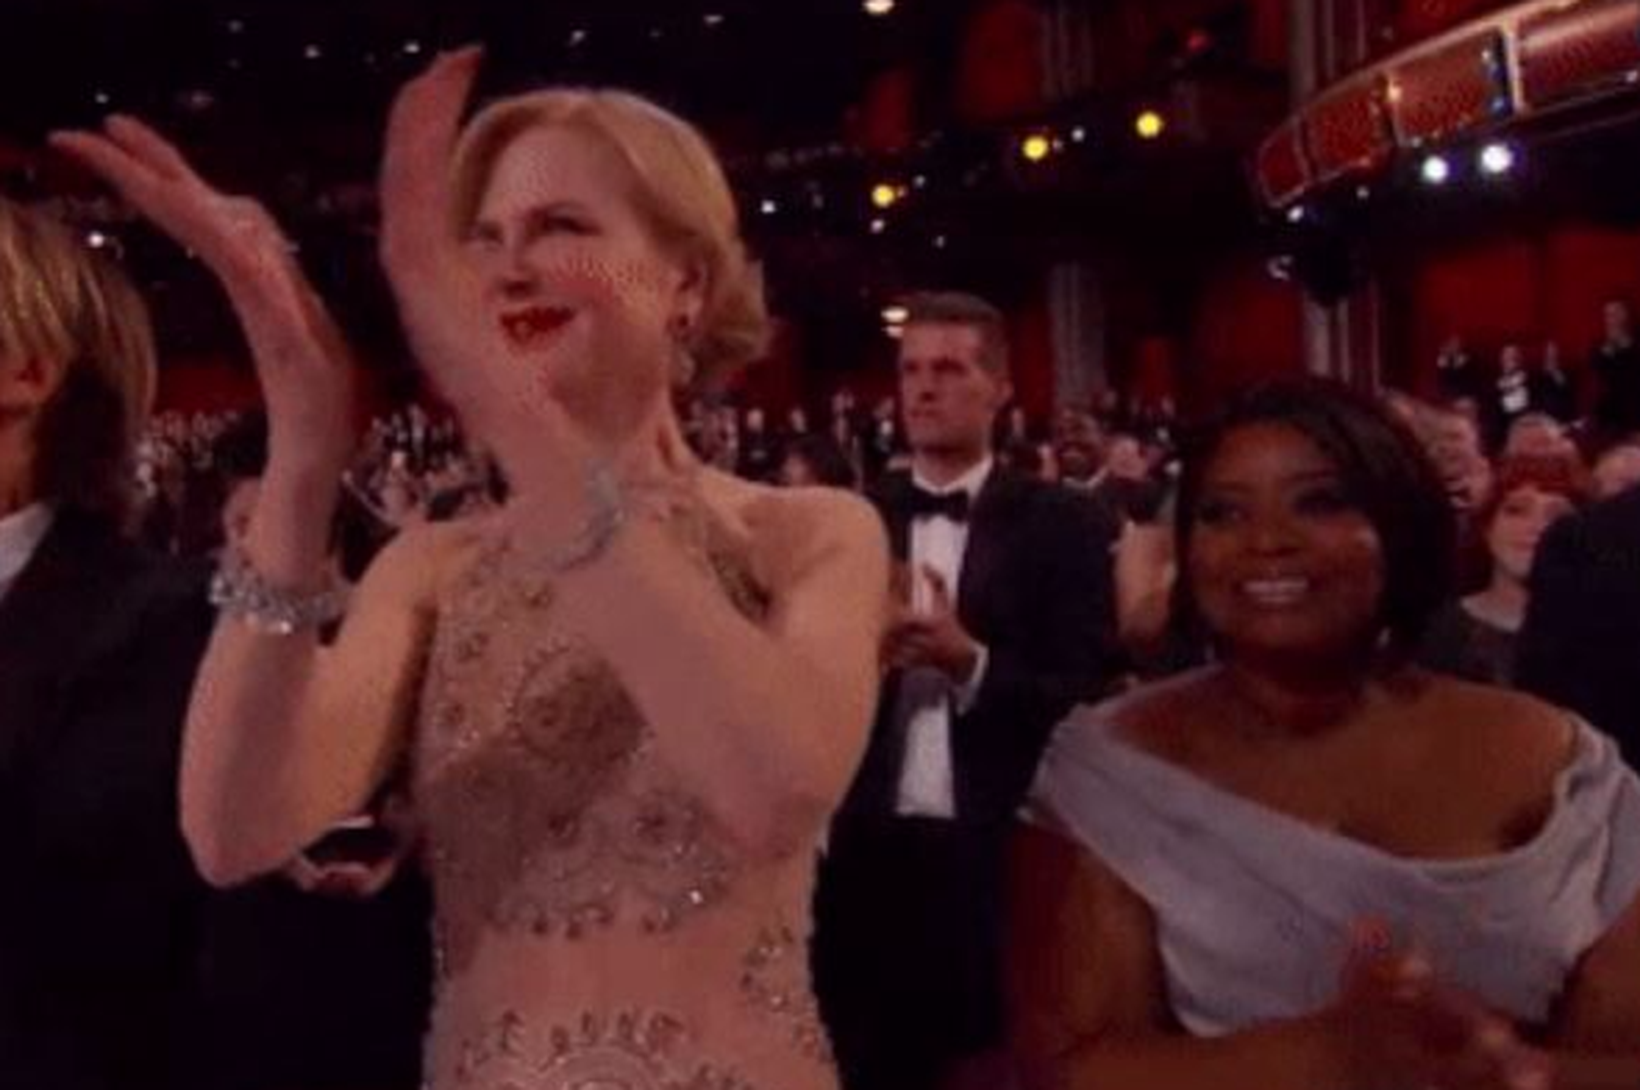 Skringilegt klapp Nicole Kidman vekur athygli